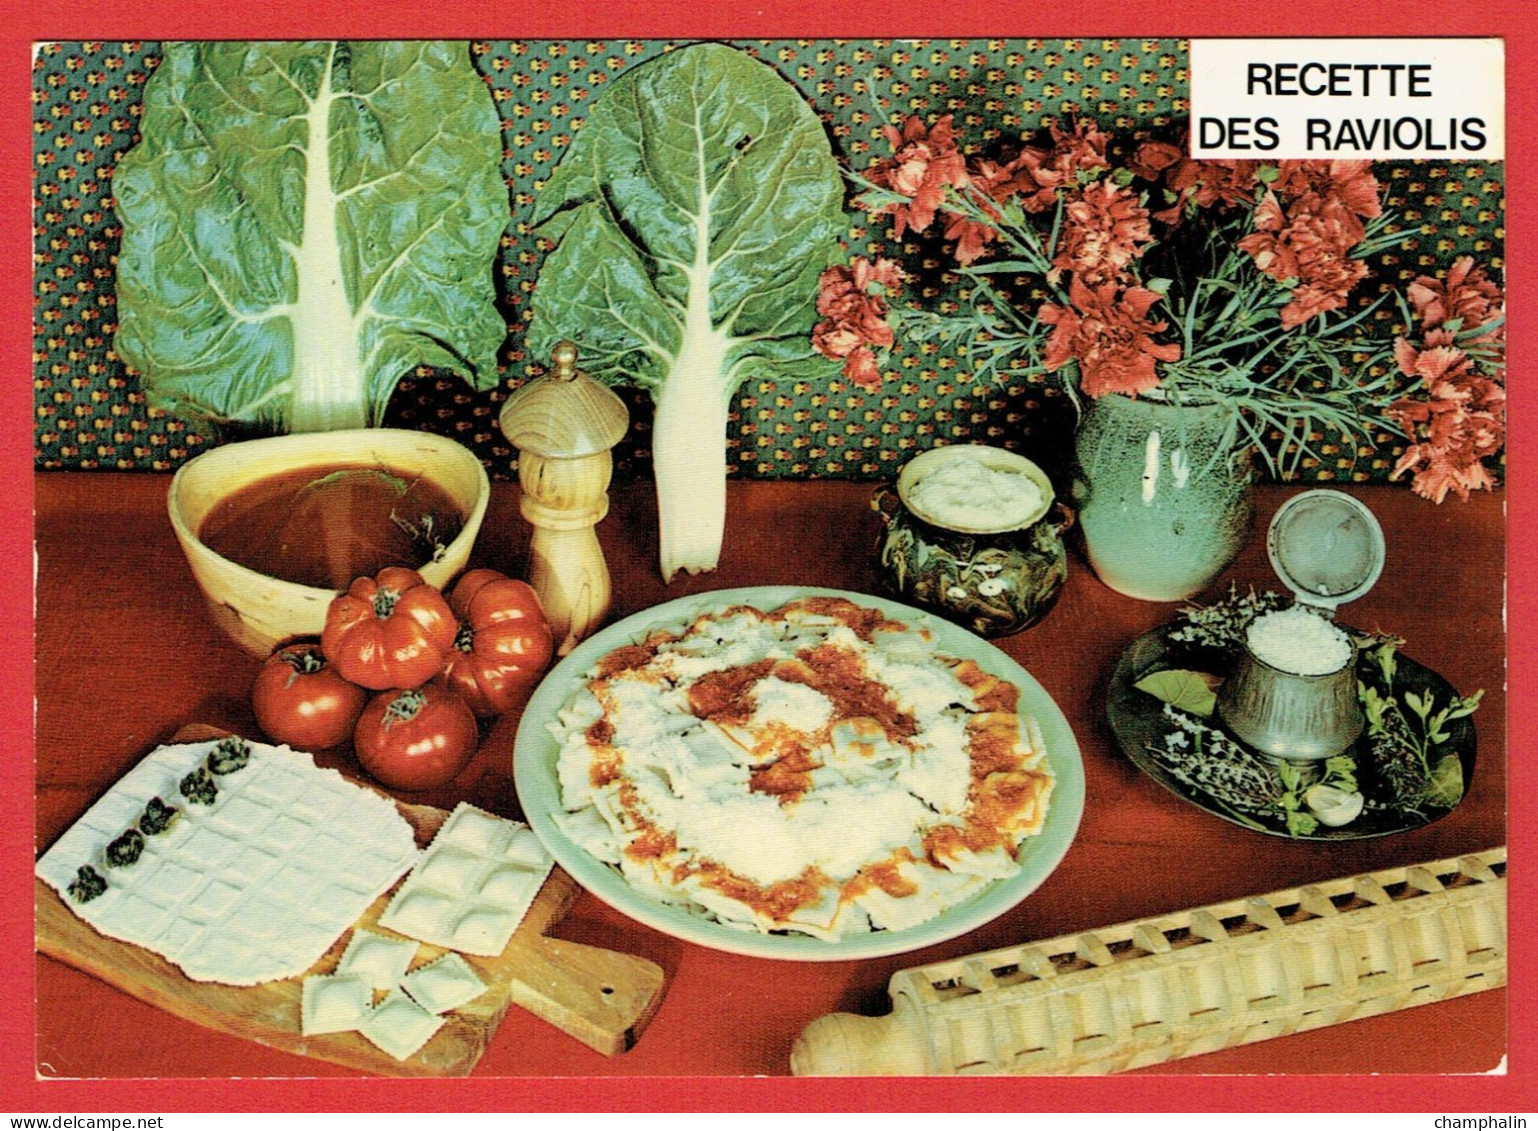 Recette Georgette Simon N°611 - Les Raviolis - Cuisine - Plats Régionaux - Recipes (cooking)